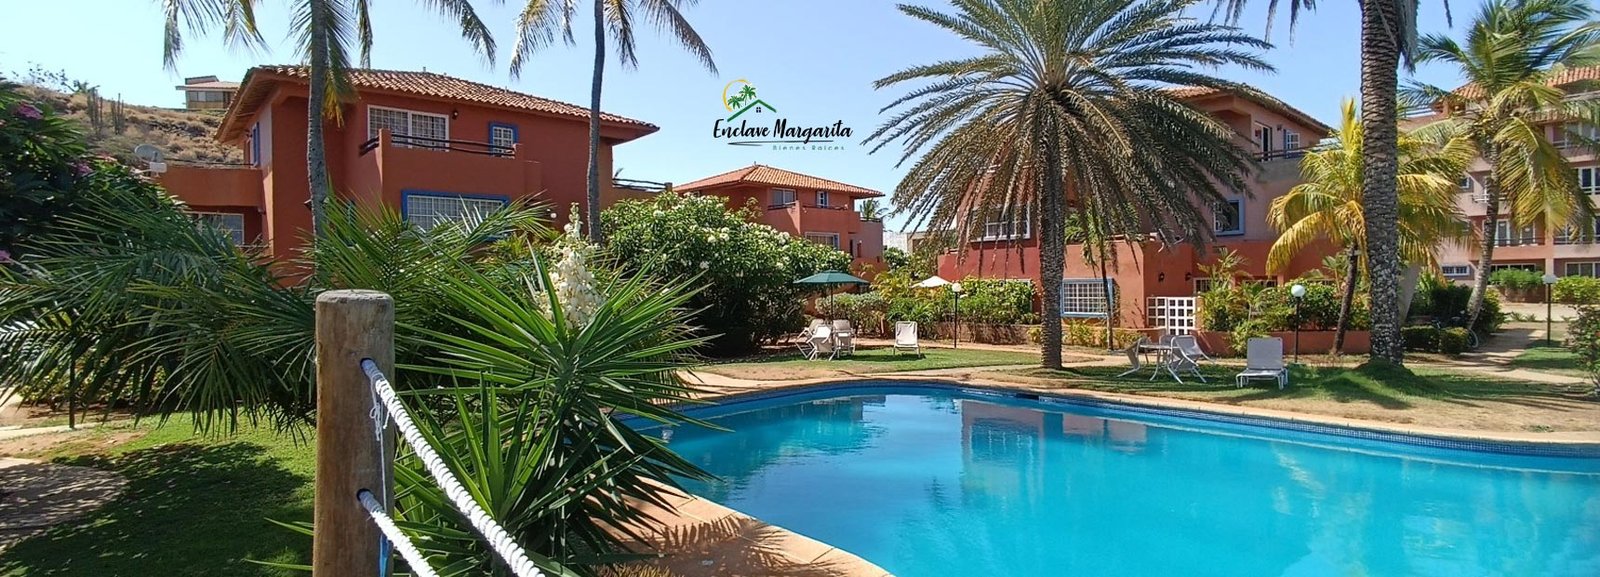 Apartamento en Margarita - Inmobiliaria en Margarita, Inmuebles Enclave Margarita